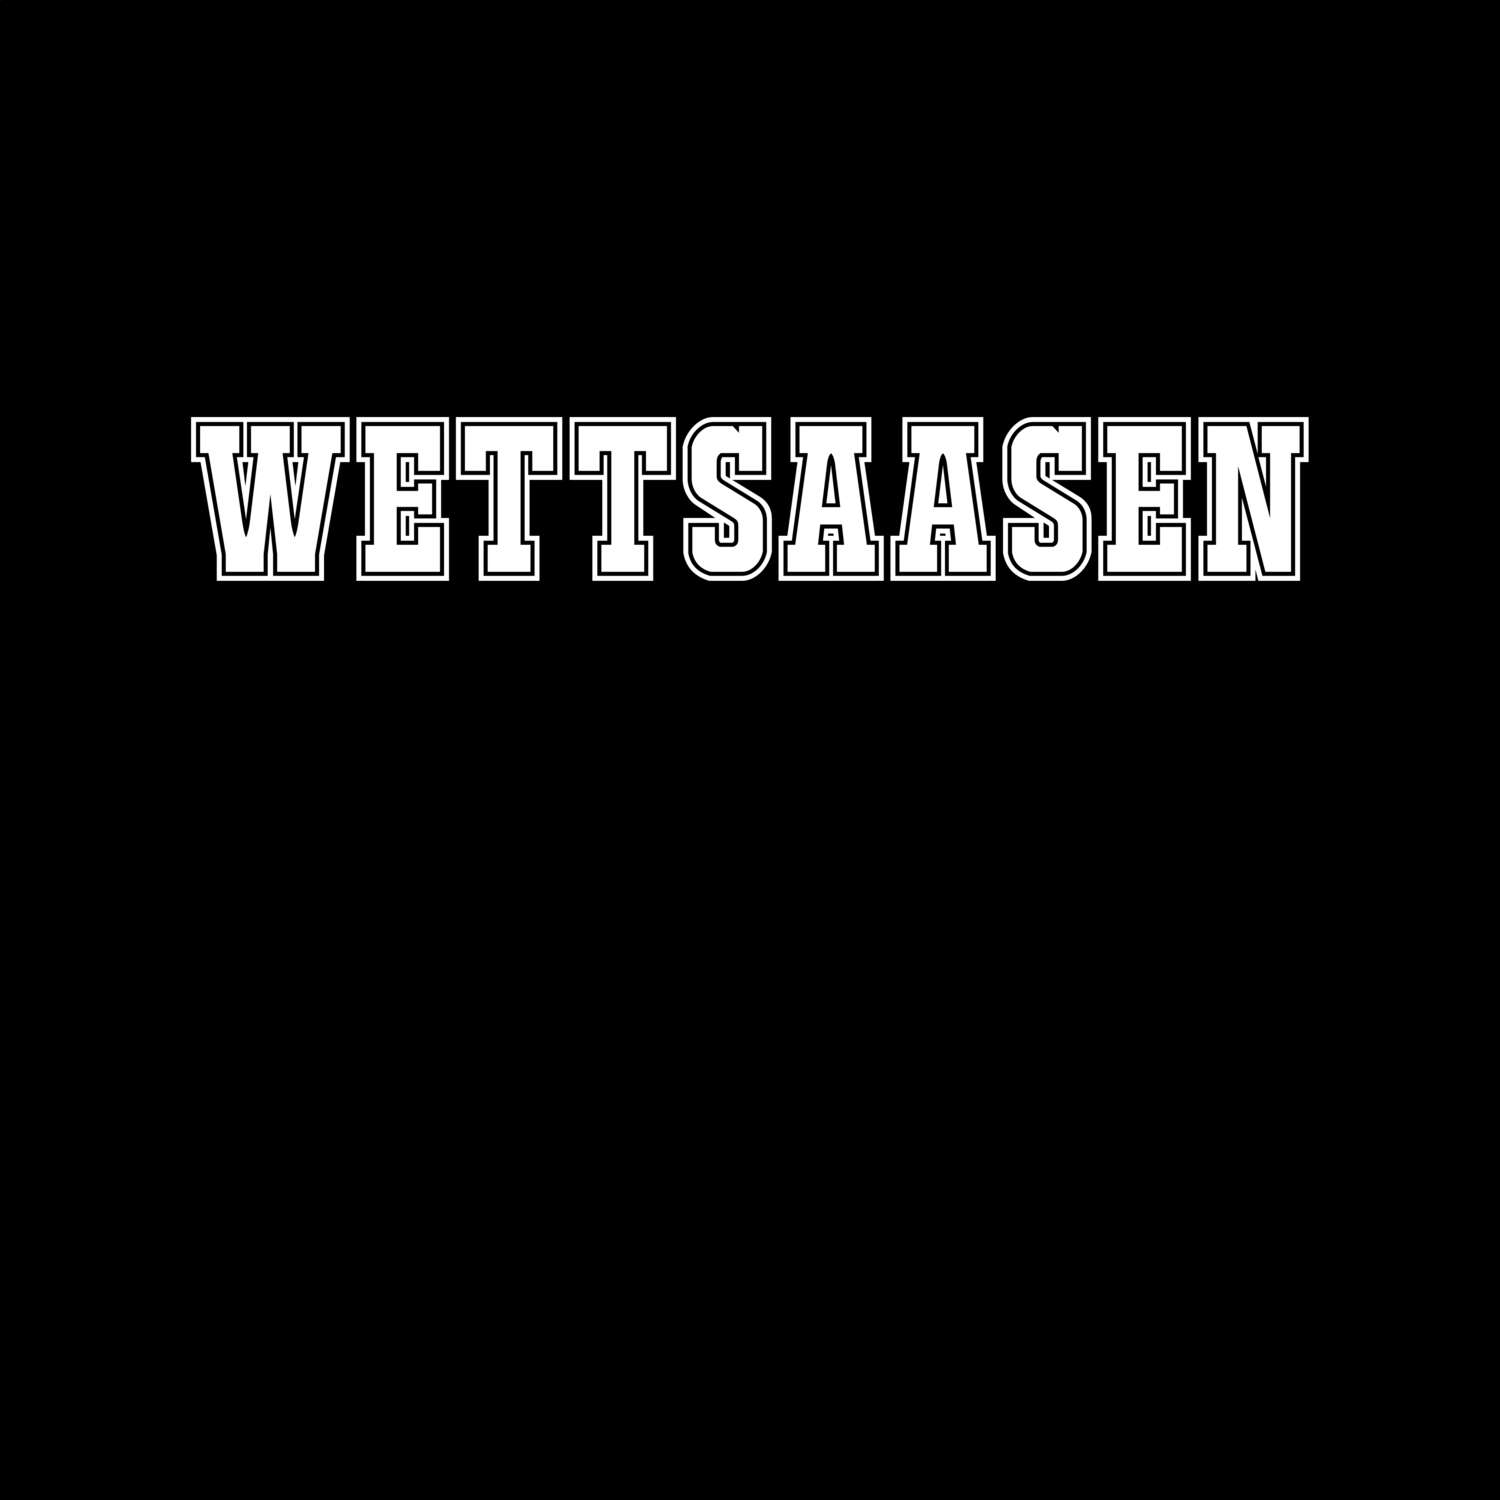 Wettsaasen T-Shirt »Classic«